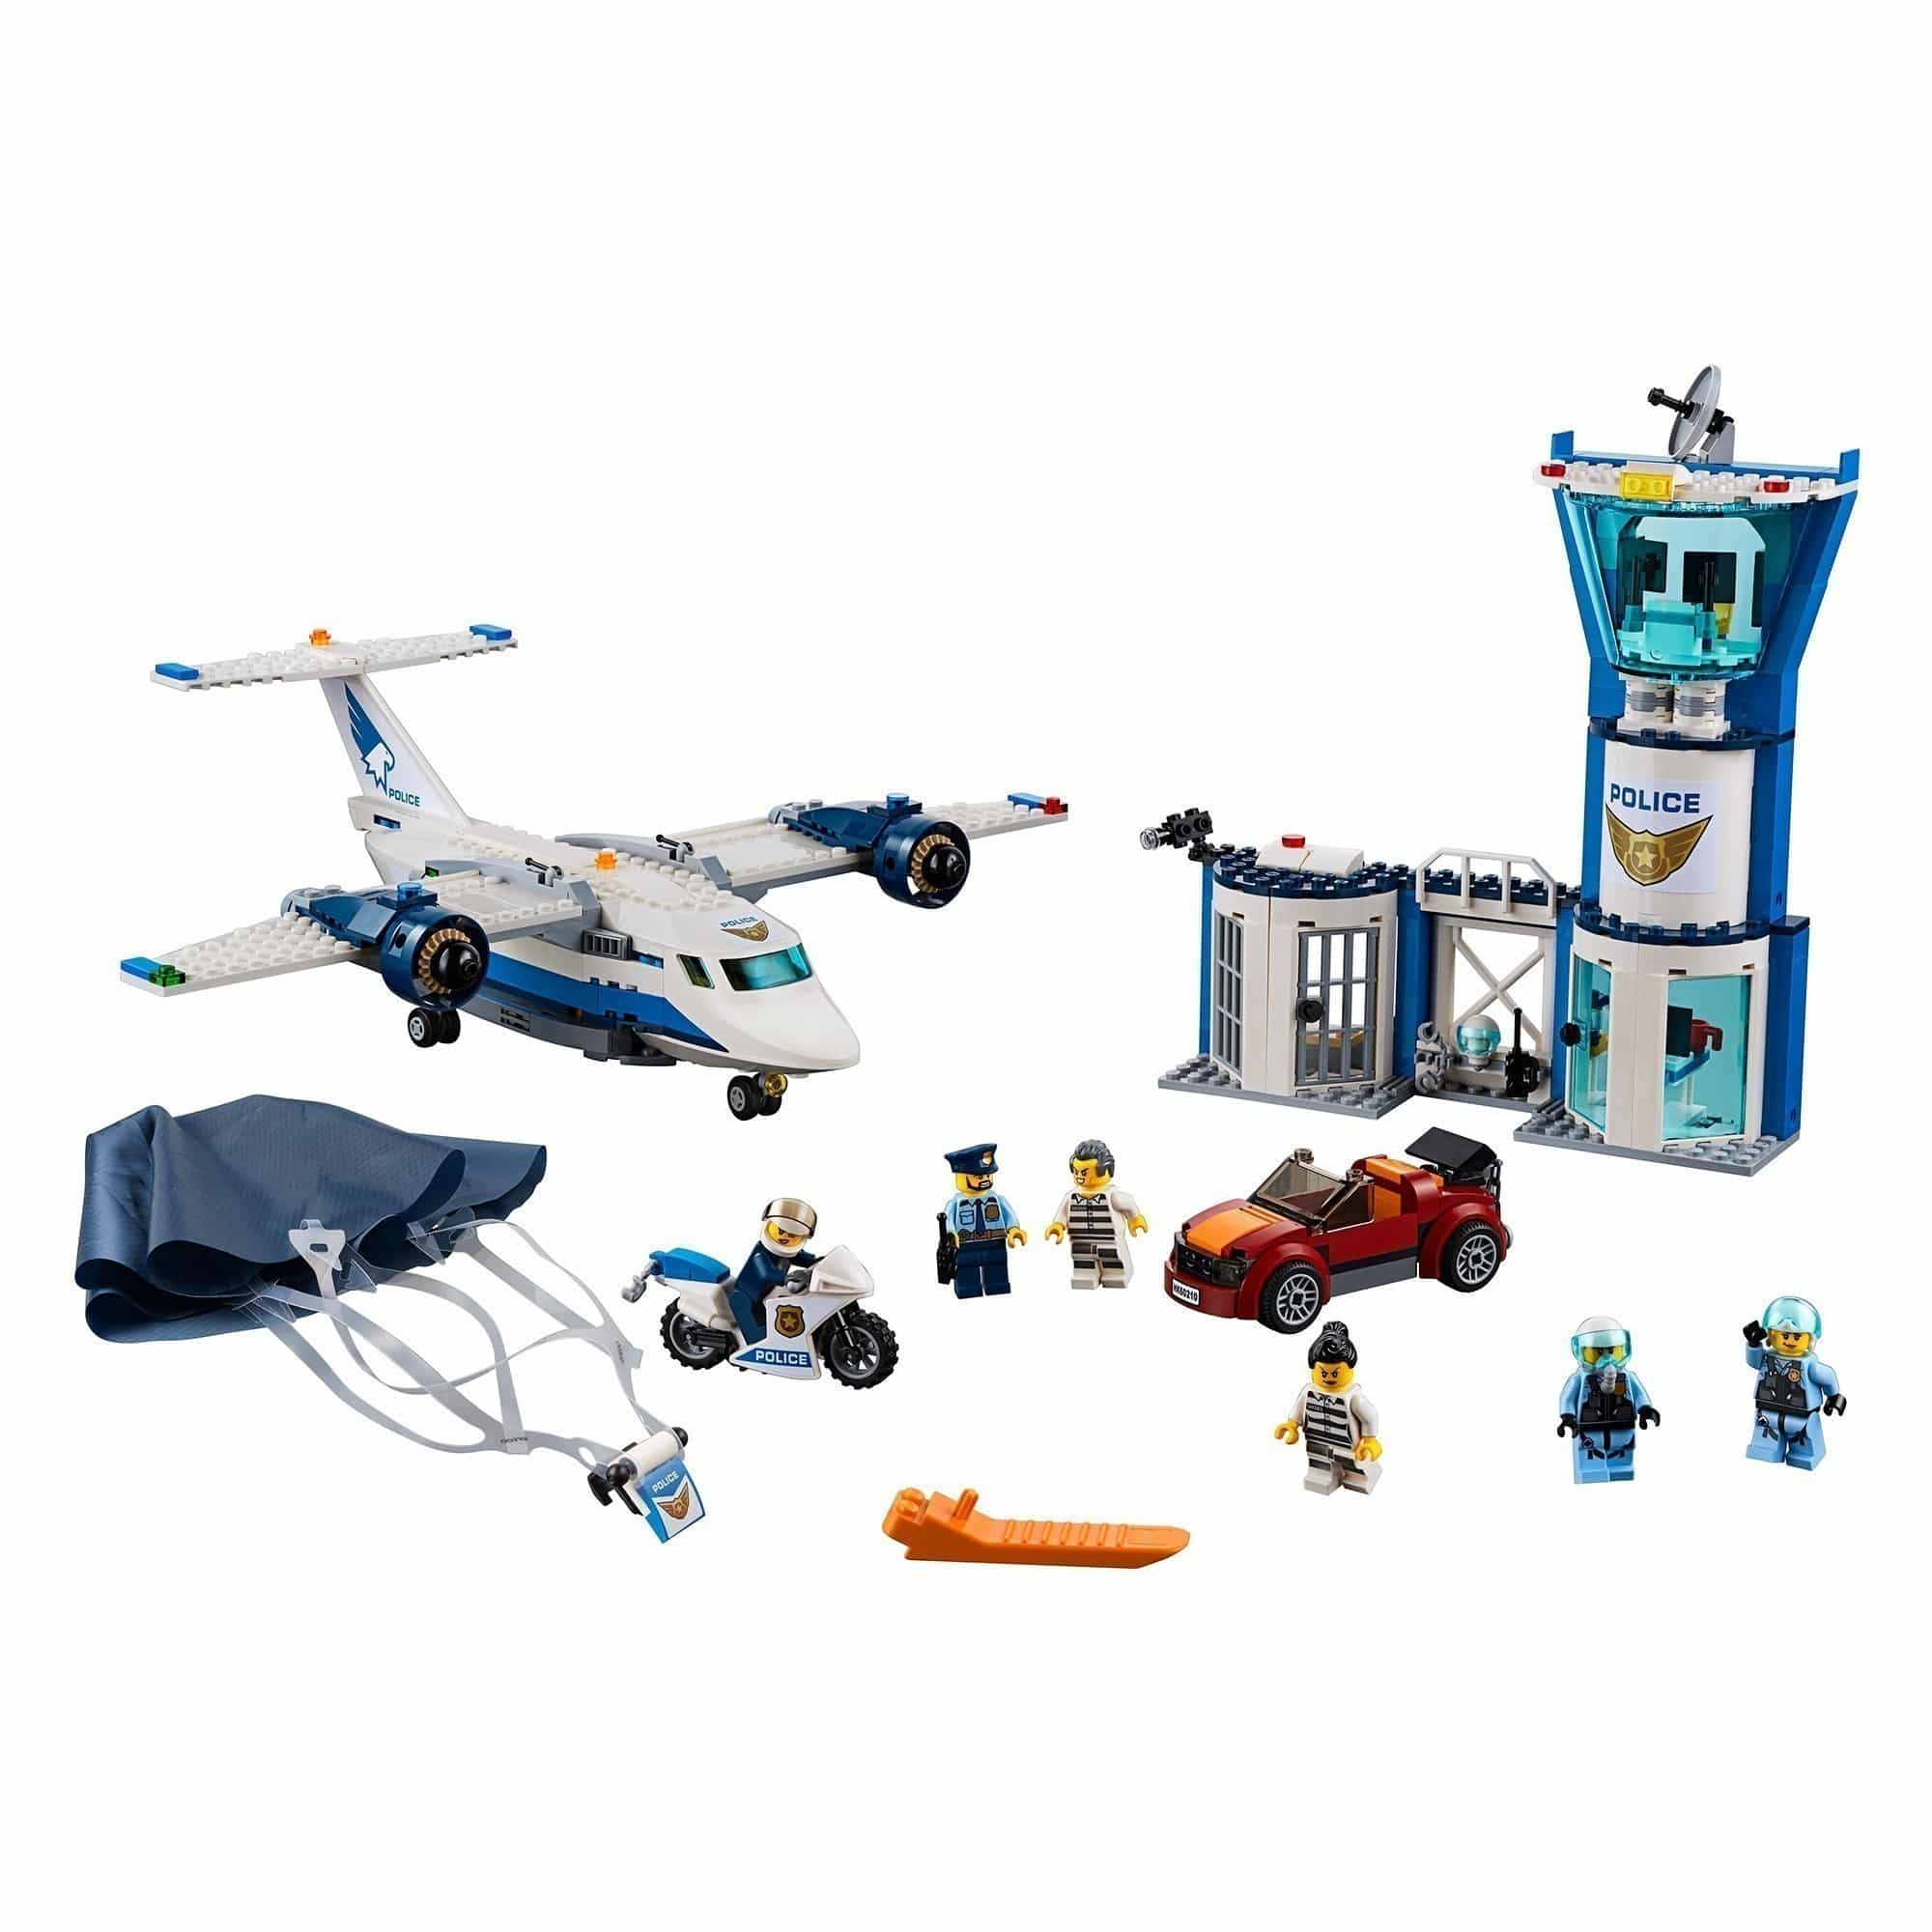 LEGO® City - 60210 Sky Police Air Base